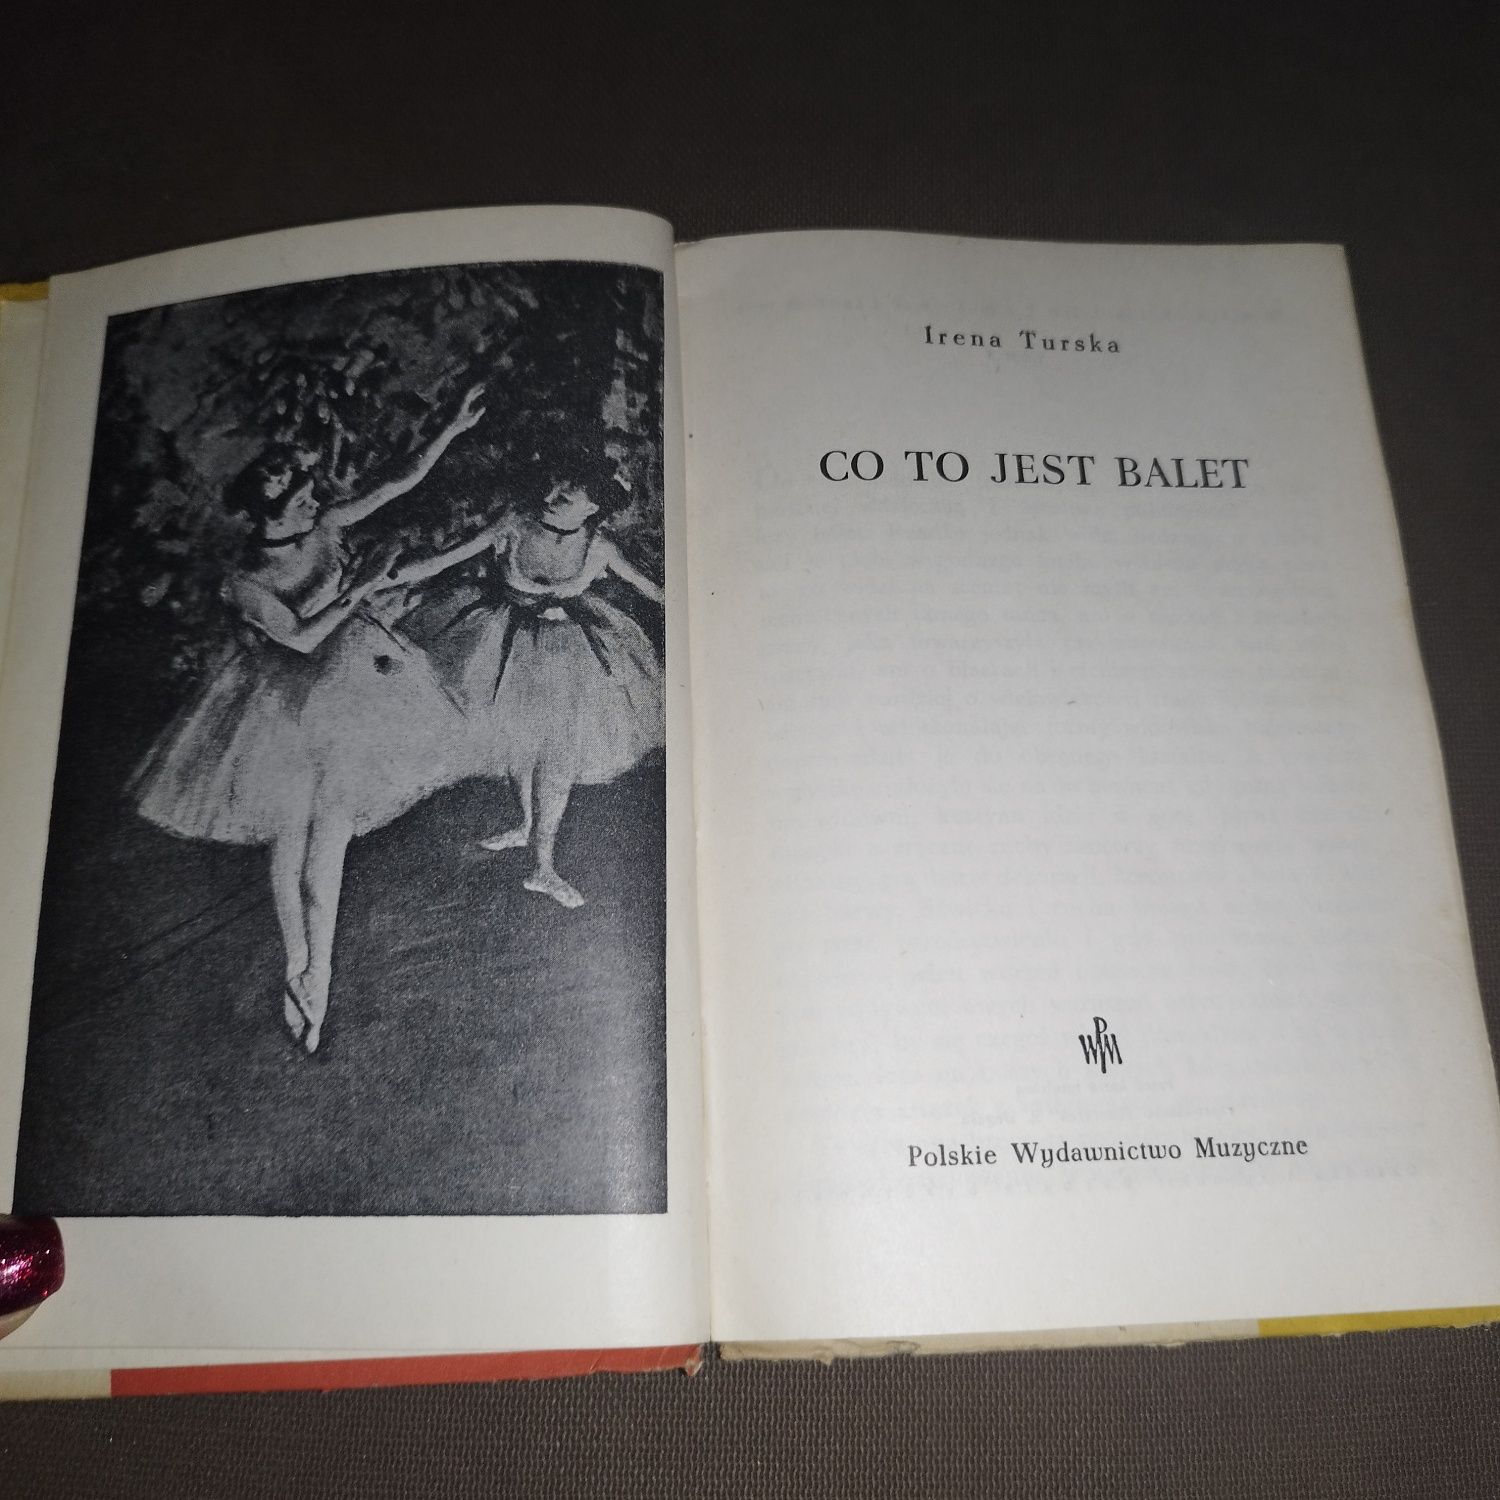 Co to jest balet - Irena Turska 1957